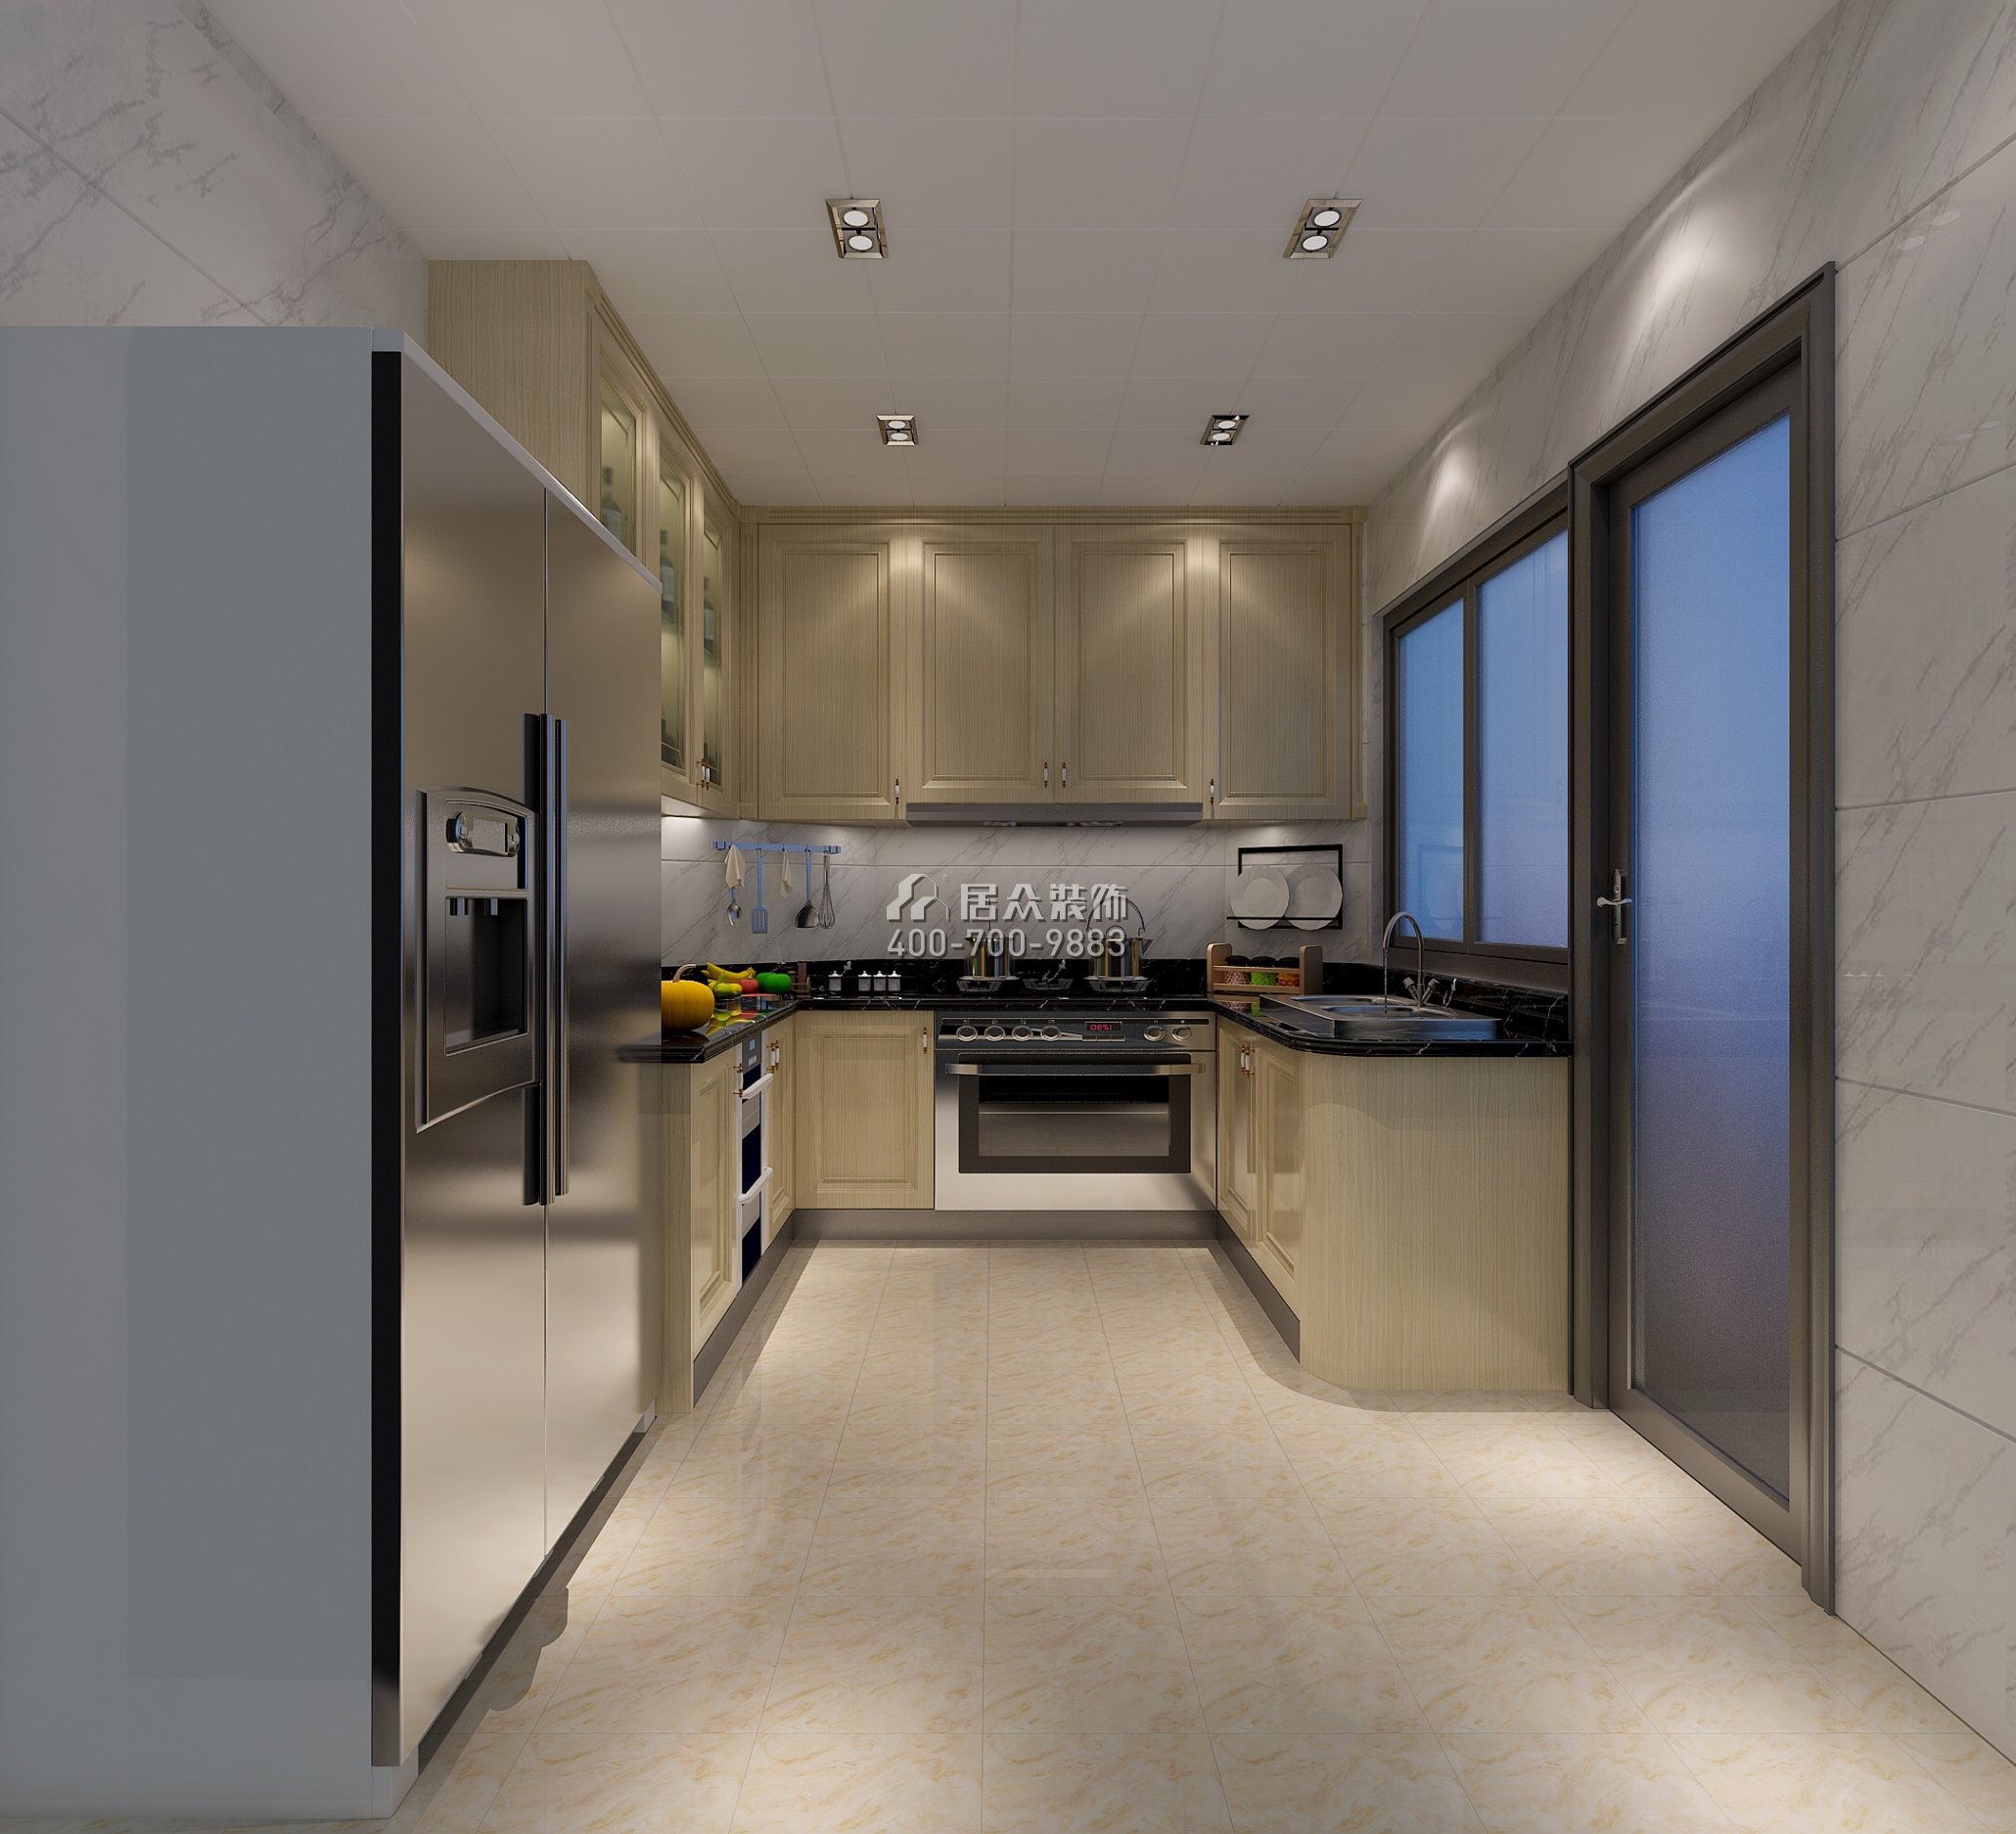 祈福天龍苑140平方米歐式風格平層戶型廚房裝修效果圖